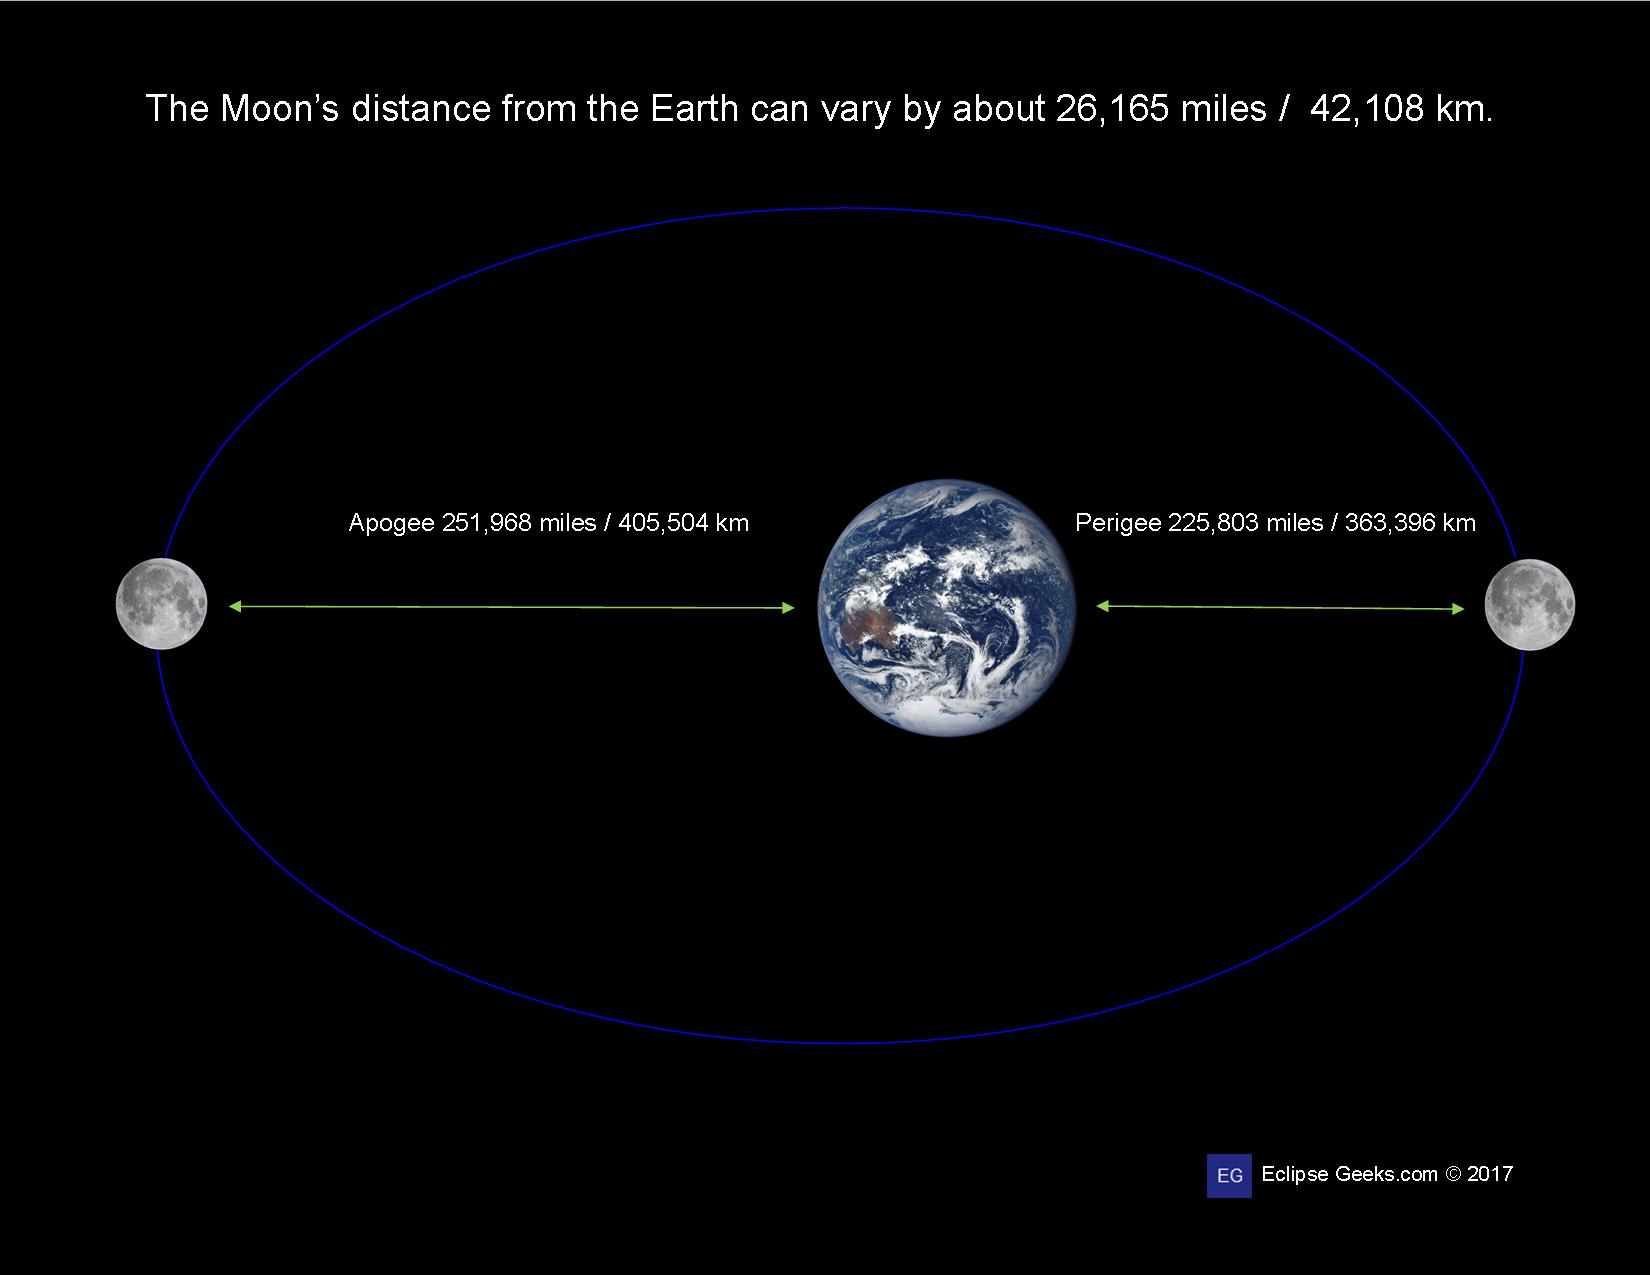 Наибольшее расстояние до луны